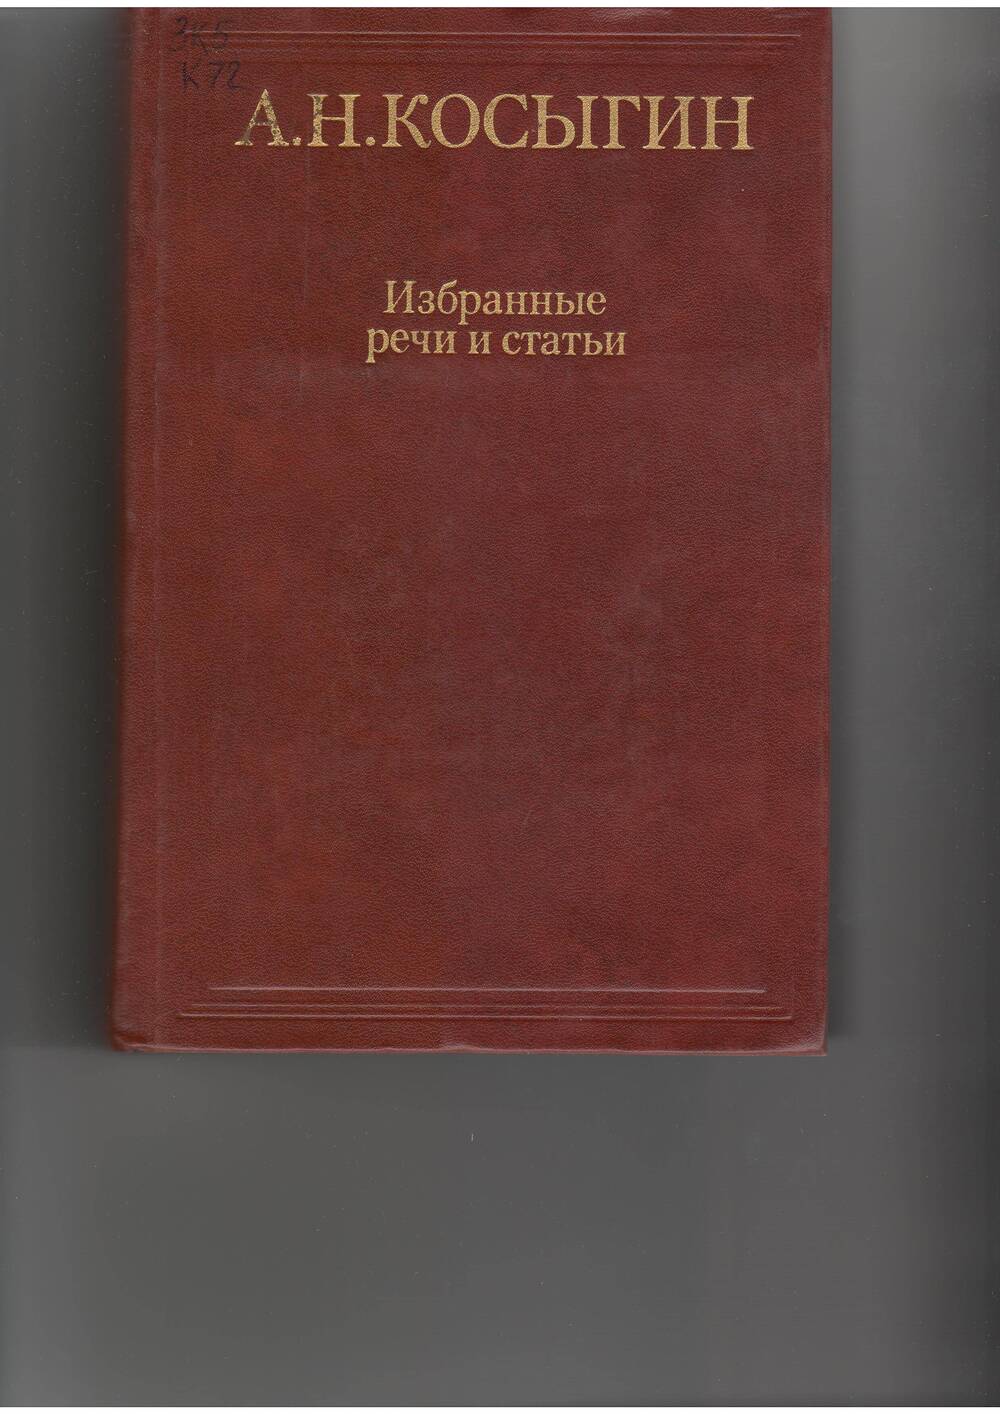 книга  Косыгин А.. Избранные речи и статьи. - М: Политлит,1984.